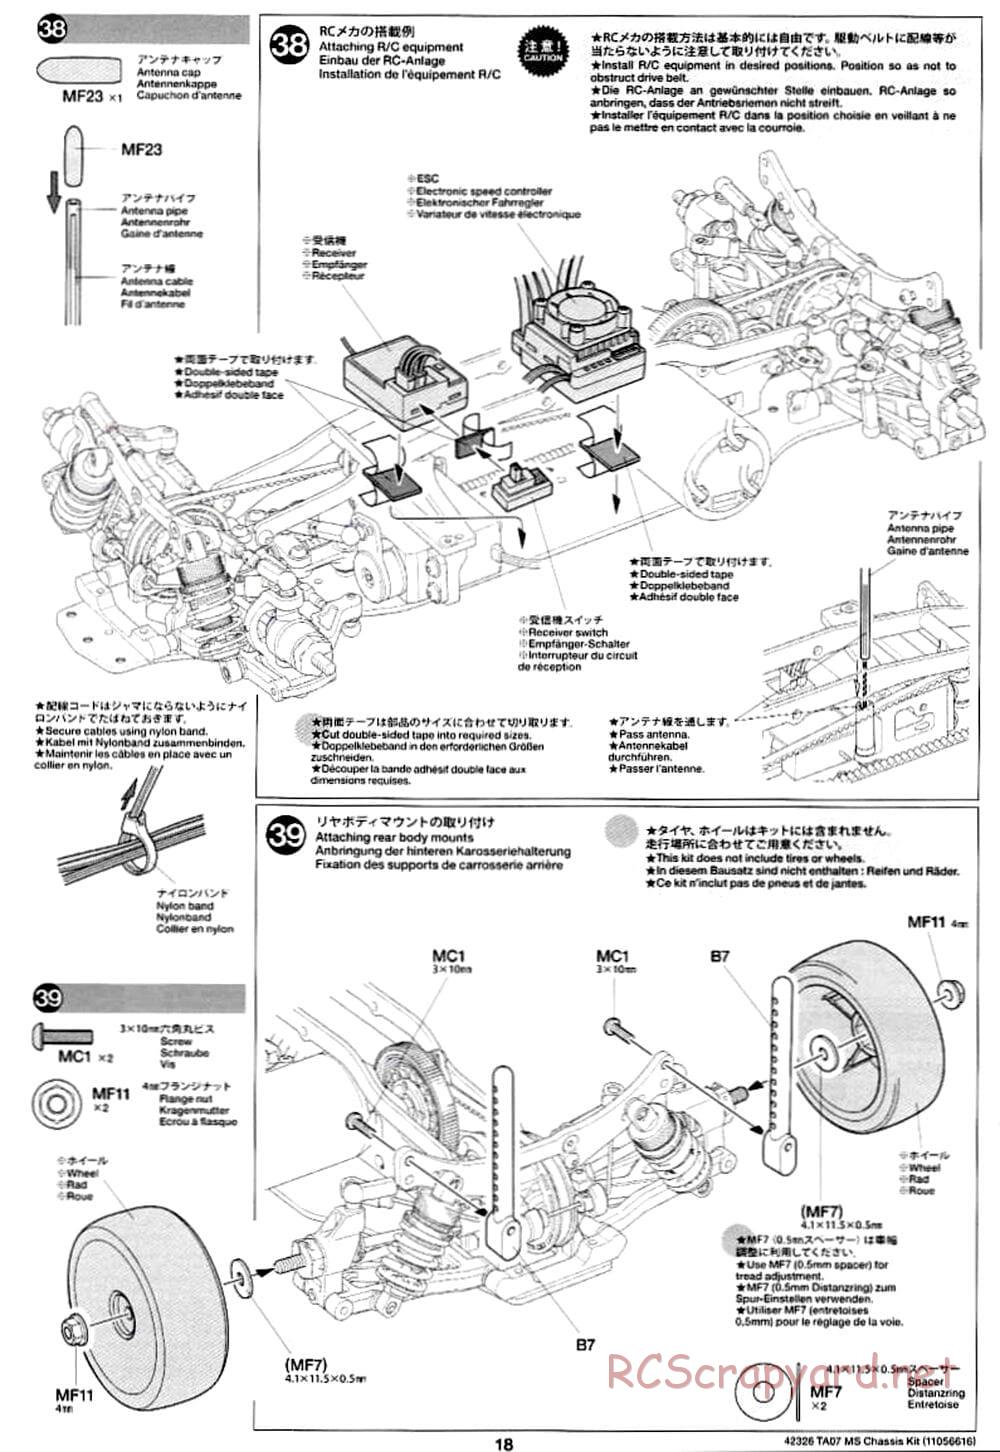 Tamiya - TA07 MS Chassis - Manual - Page 18